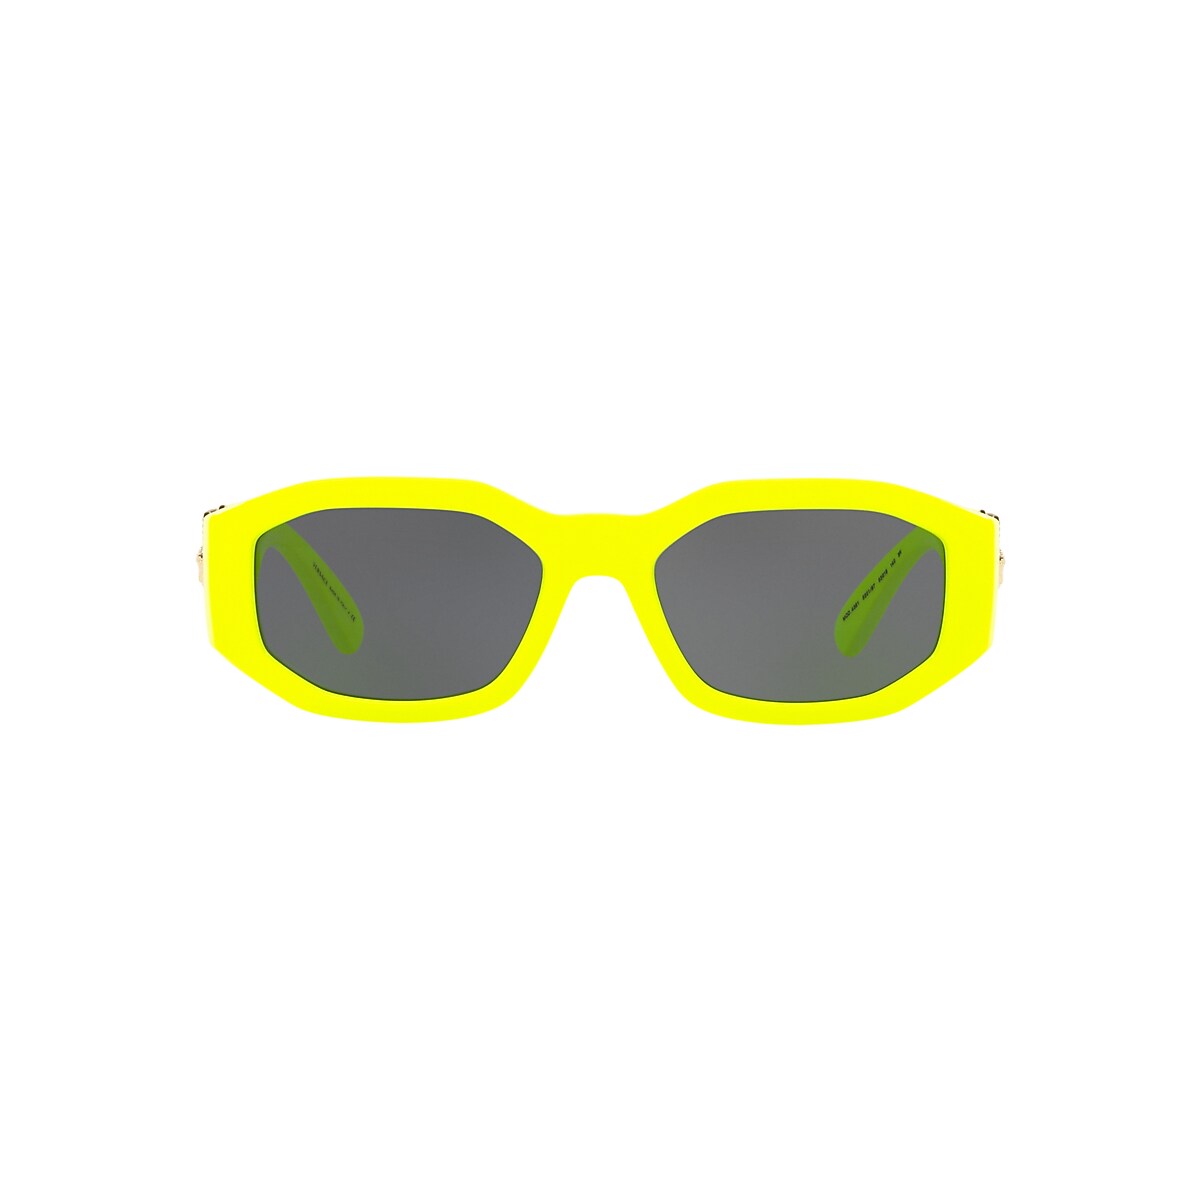 VERSACE VE4361 Biggie Yellow Fluo - Men Luxury Sunglasses, Dark Grey Lens